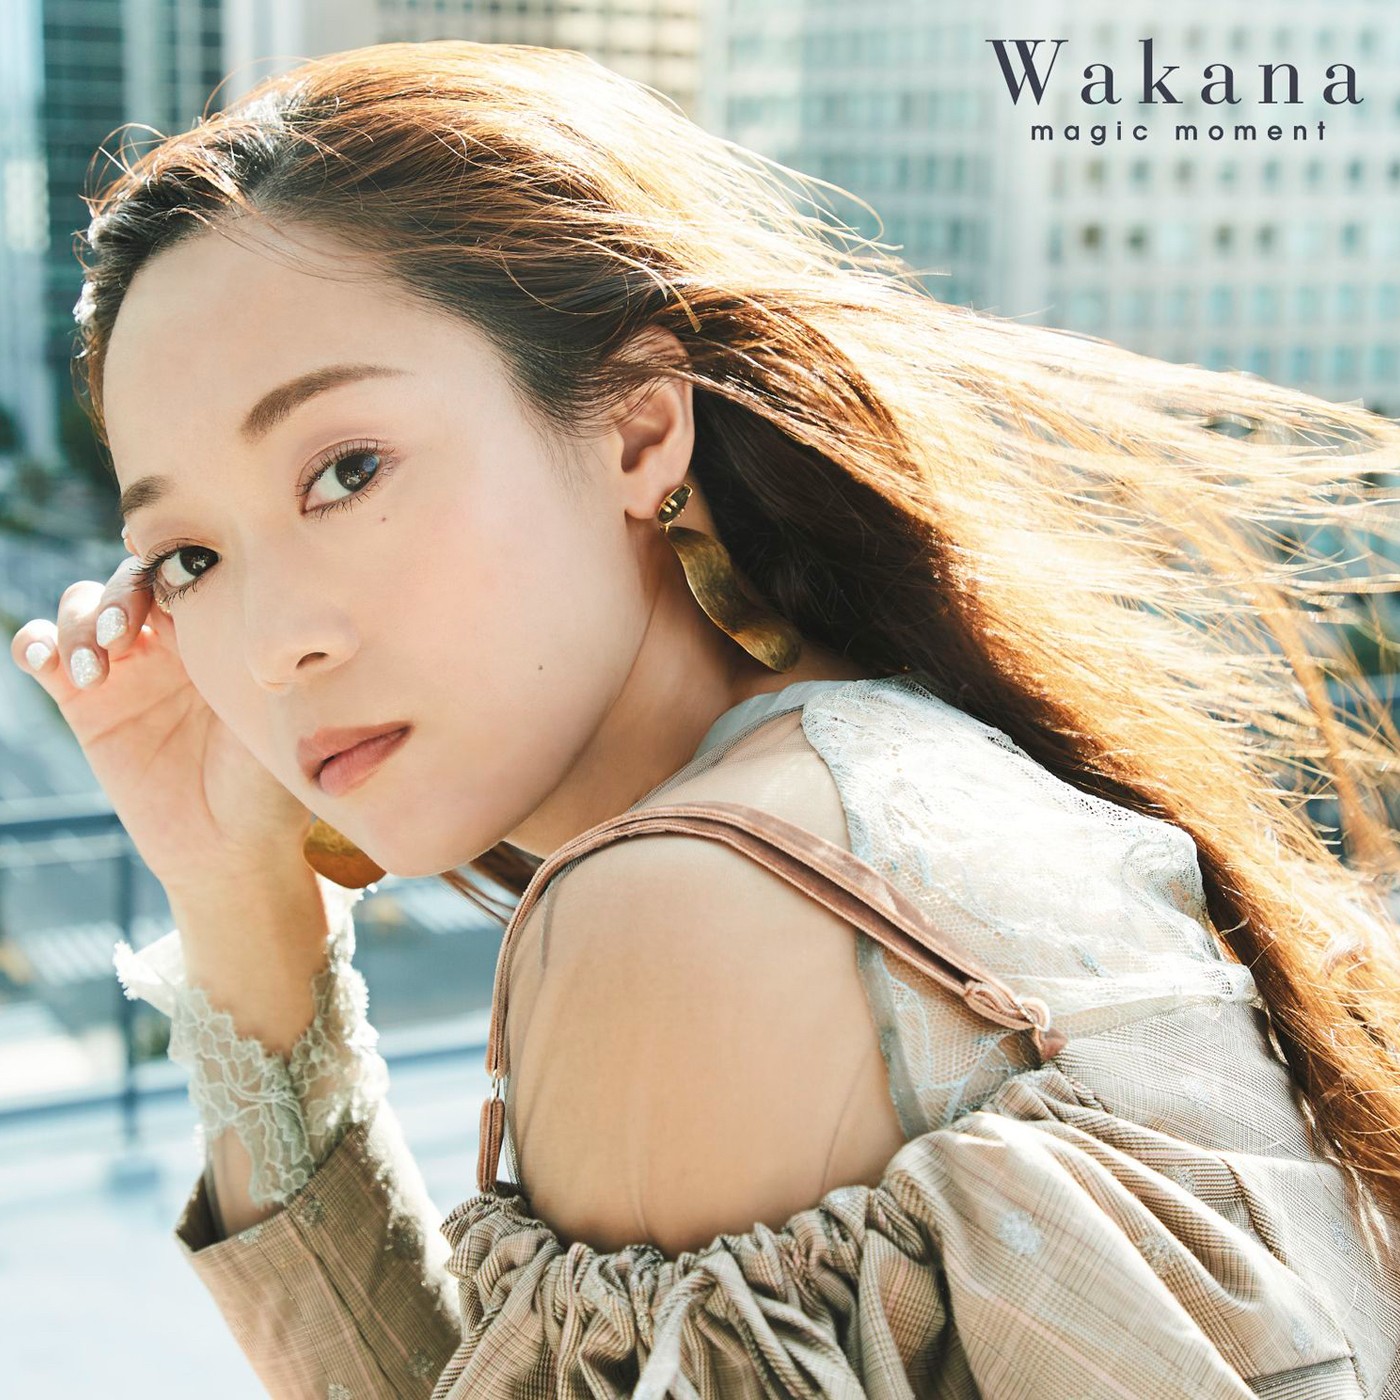 Wakana – J-pop Music Download